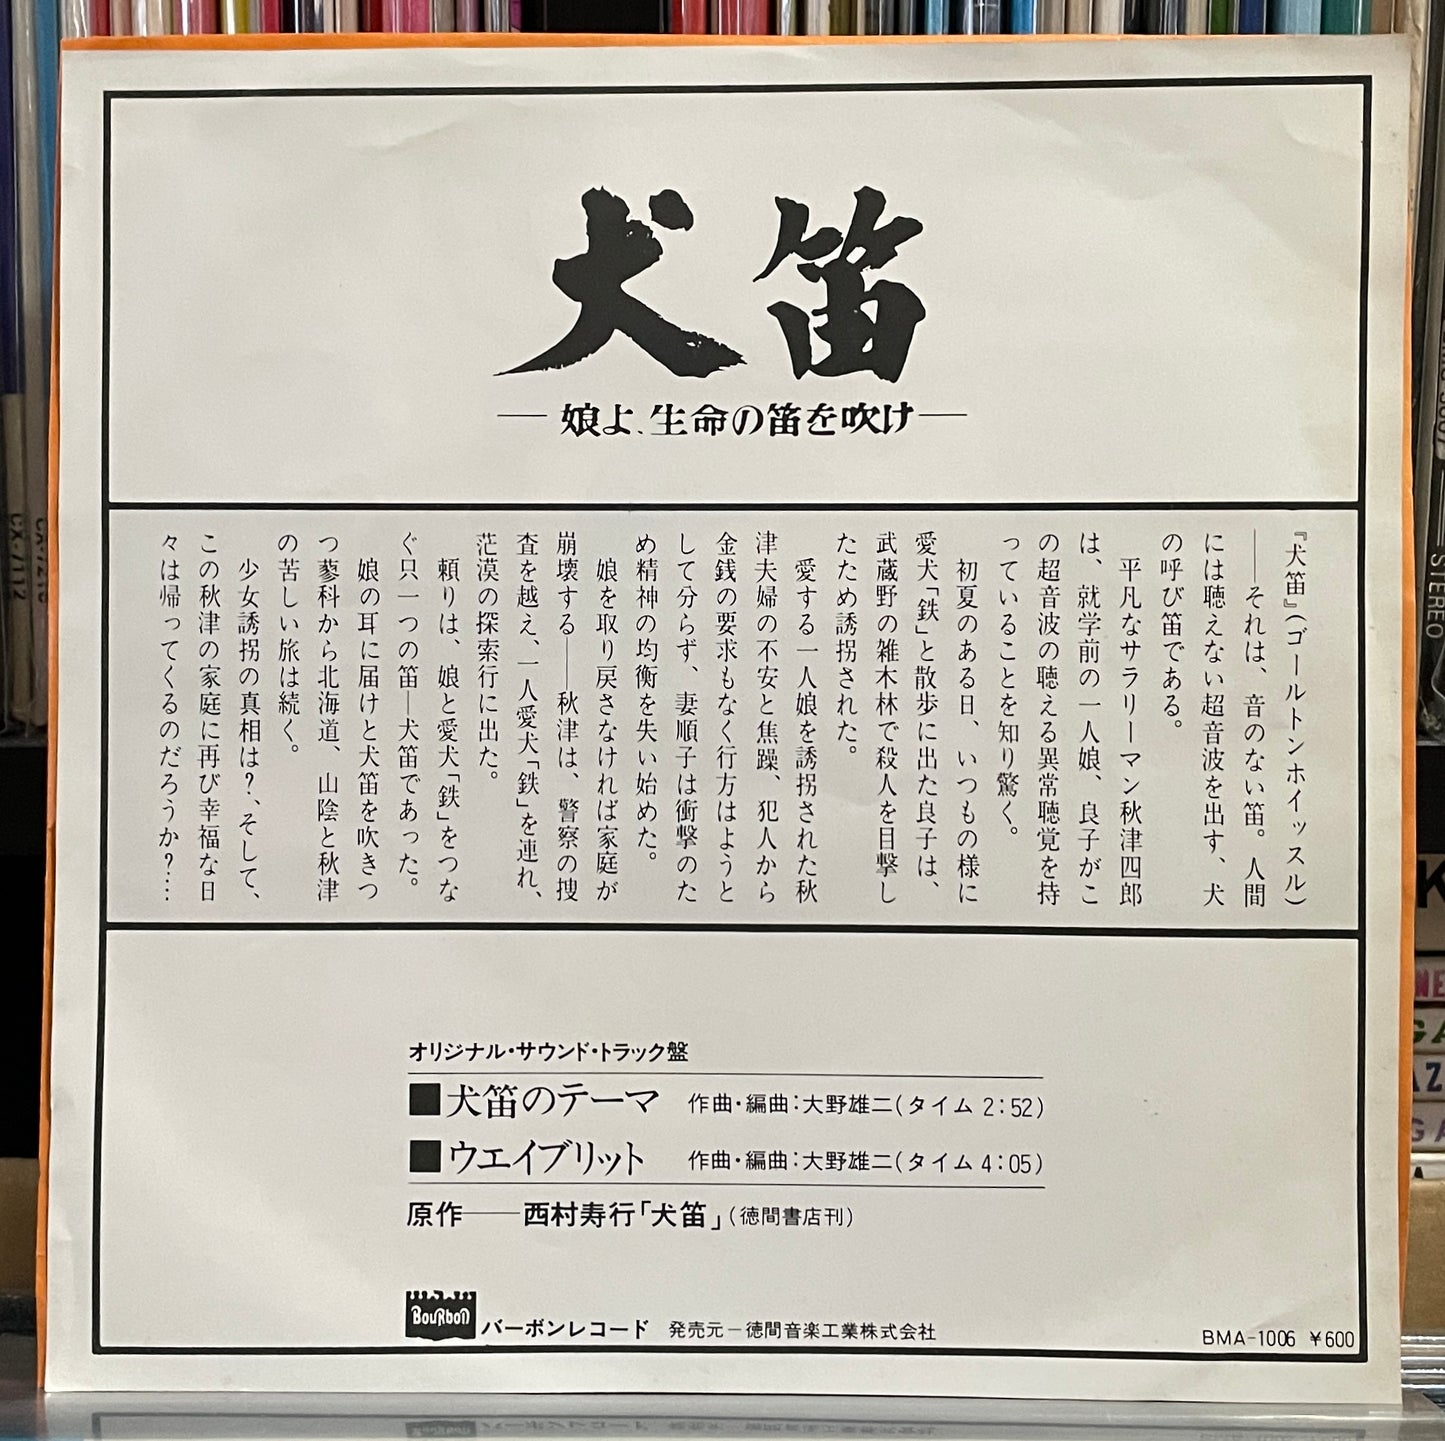 Yuji Ohno "犬笛のテーマ" (1978)